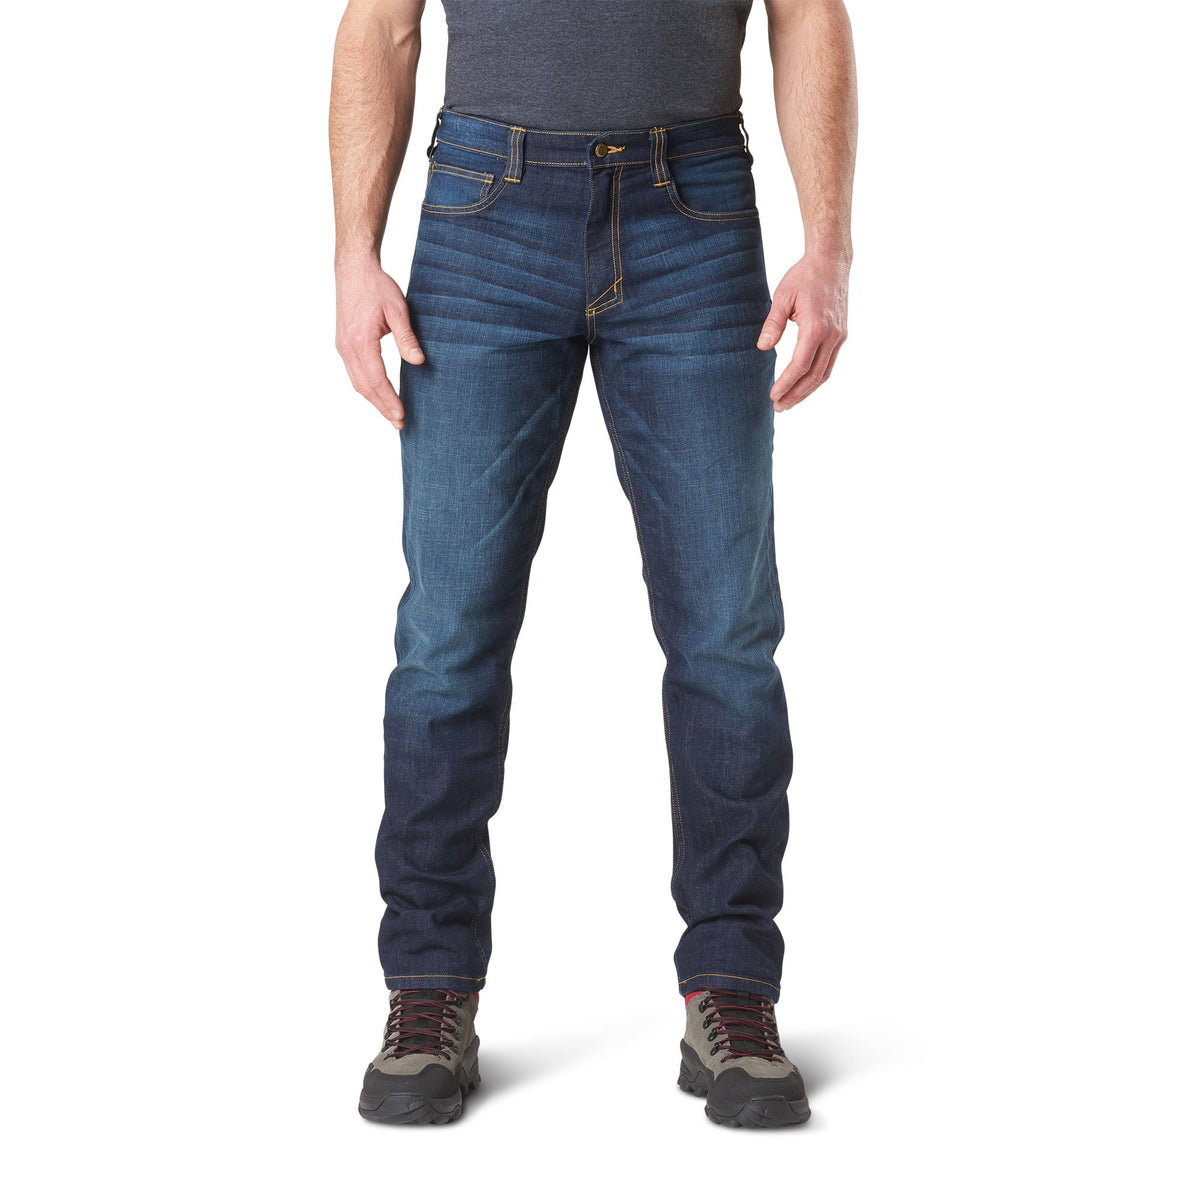 5.11 Defender Flex Slim Jeans Dark Wash Indigo Front